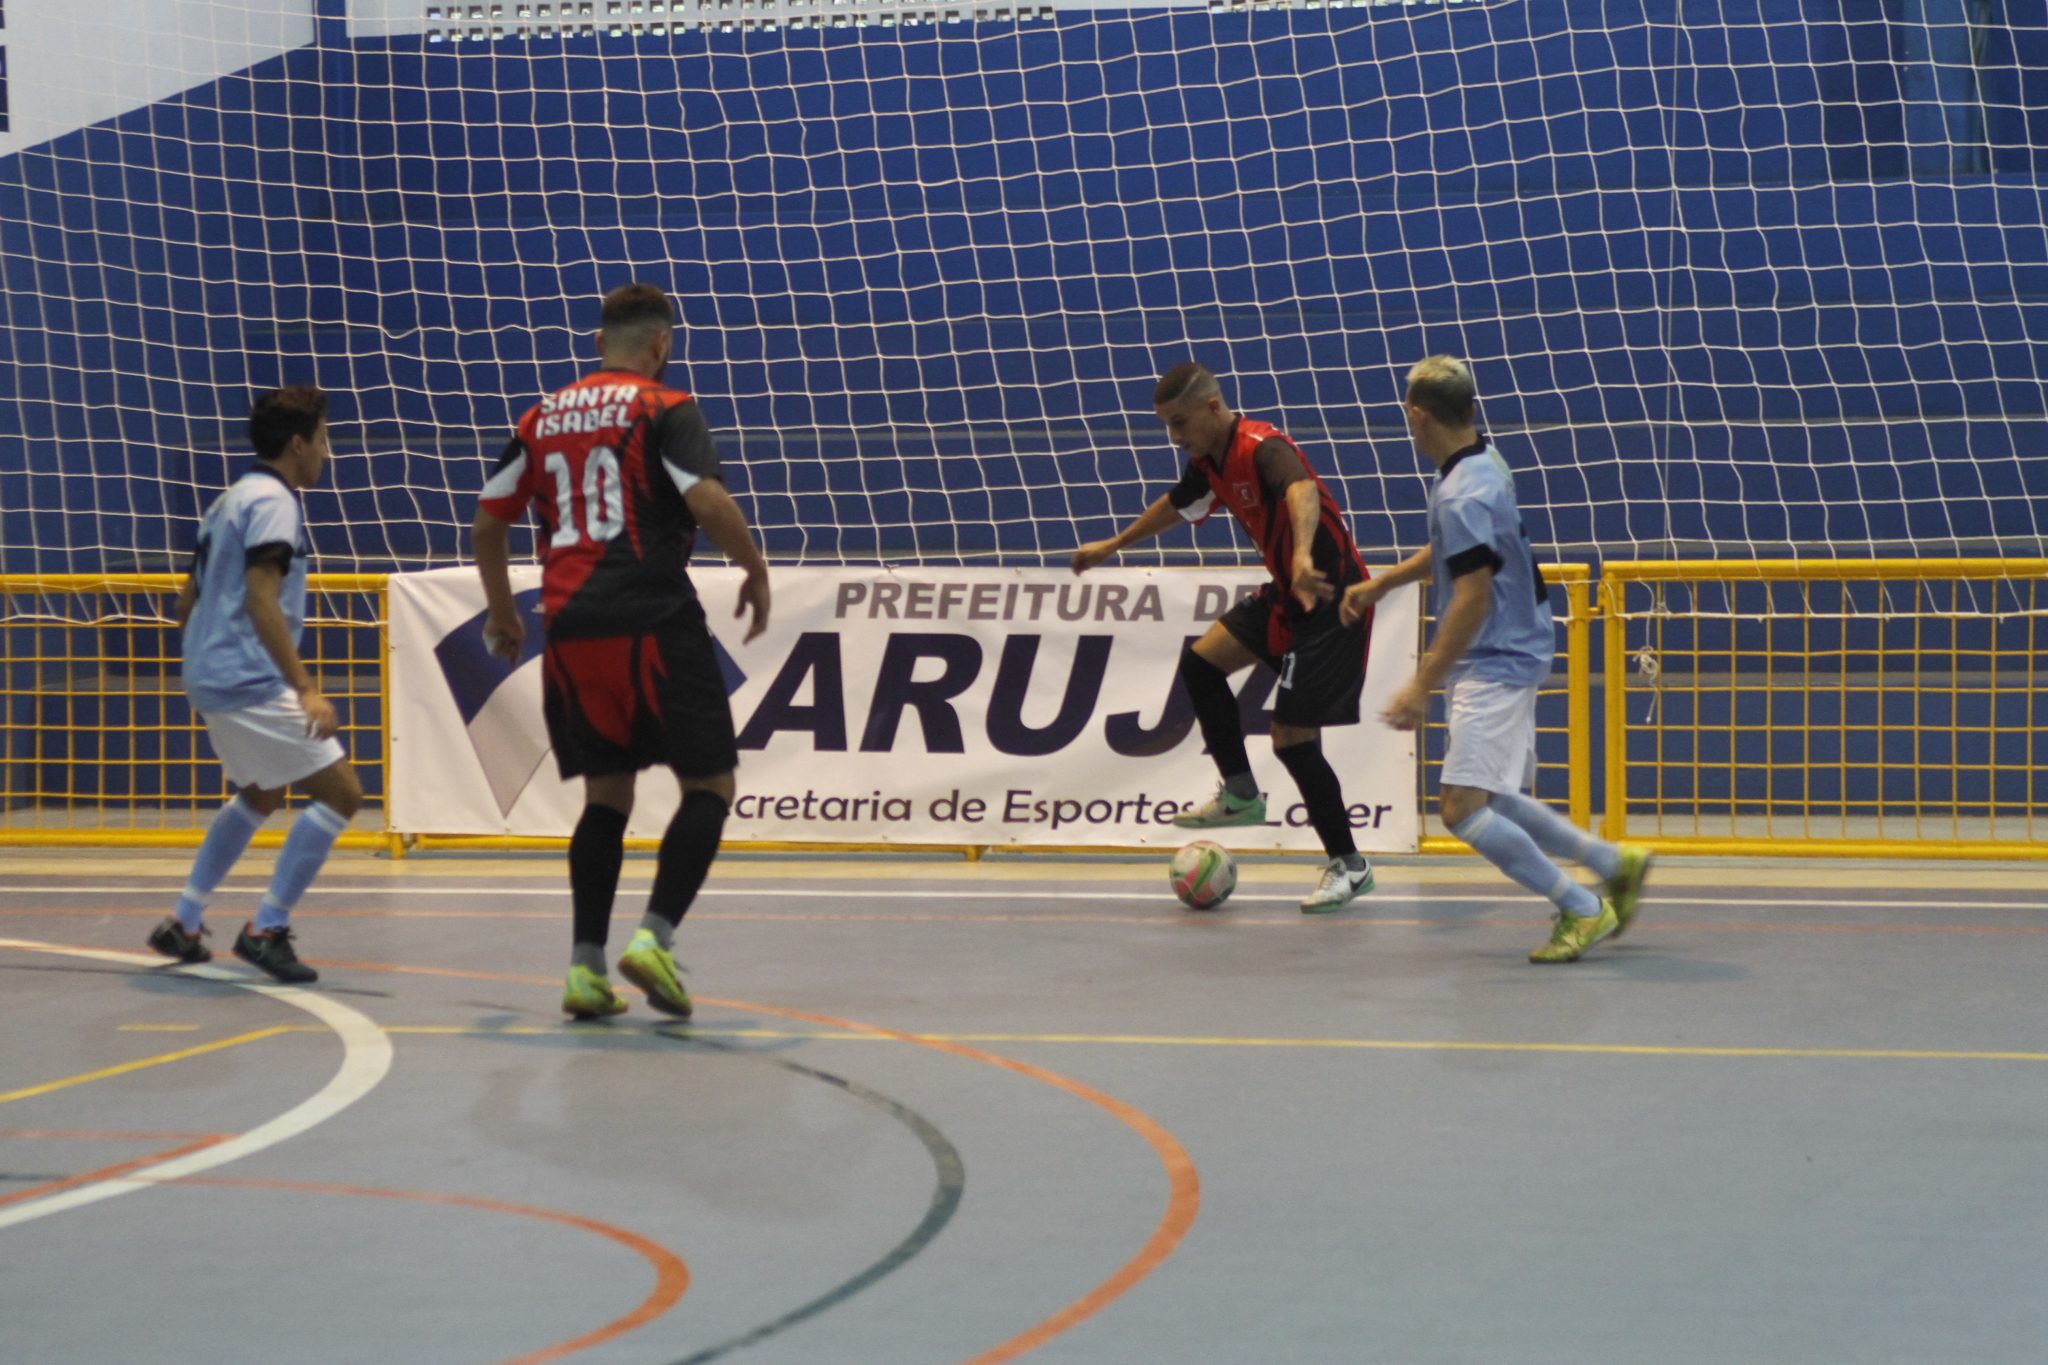 Arujá e Suzano são as cidades finalistas da Taça CONDEMAT de Futsal